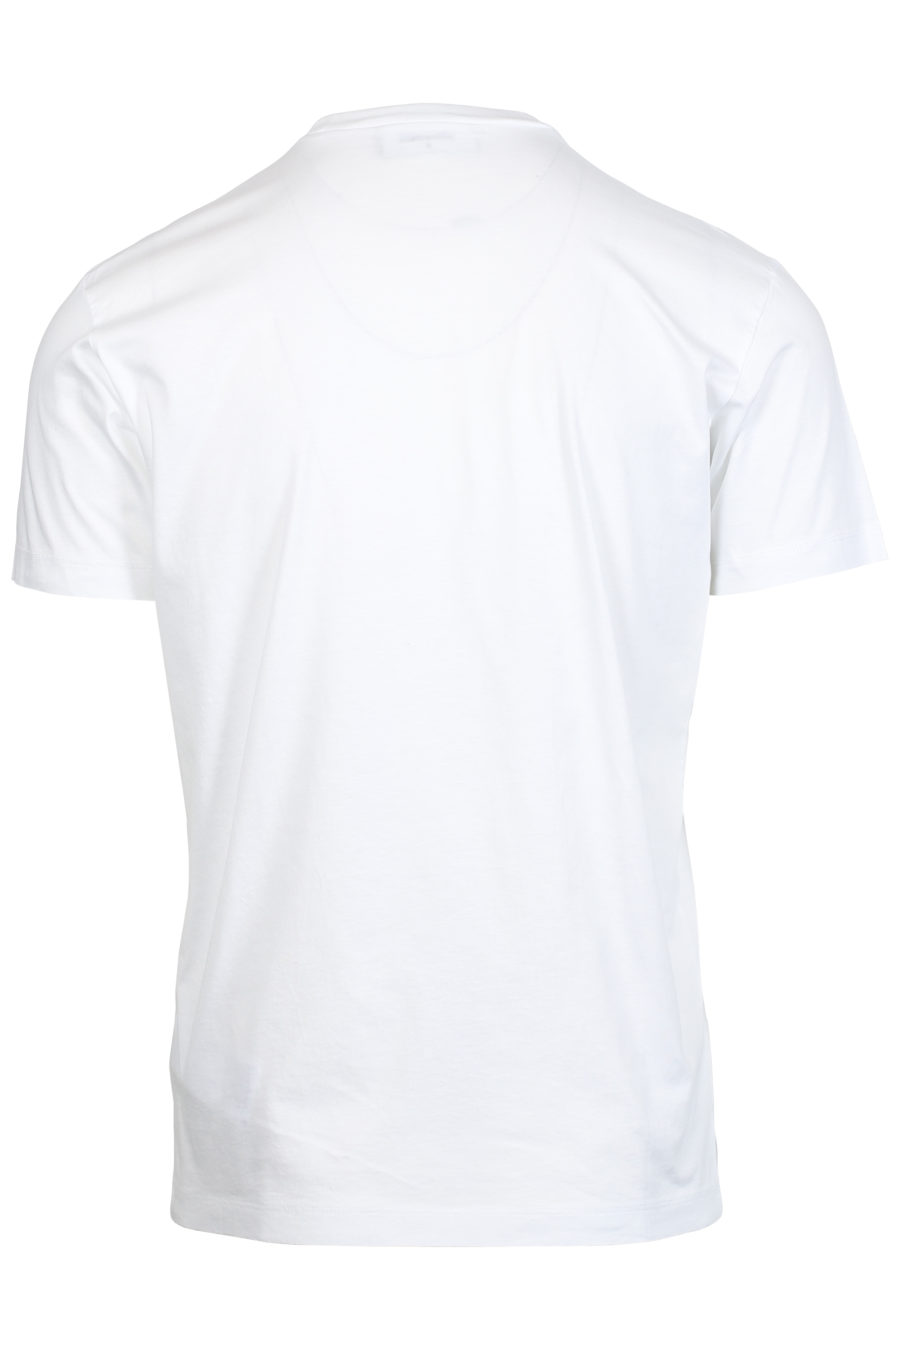 T-shirt blanc avec impression de feuilles - IMG 2405